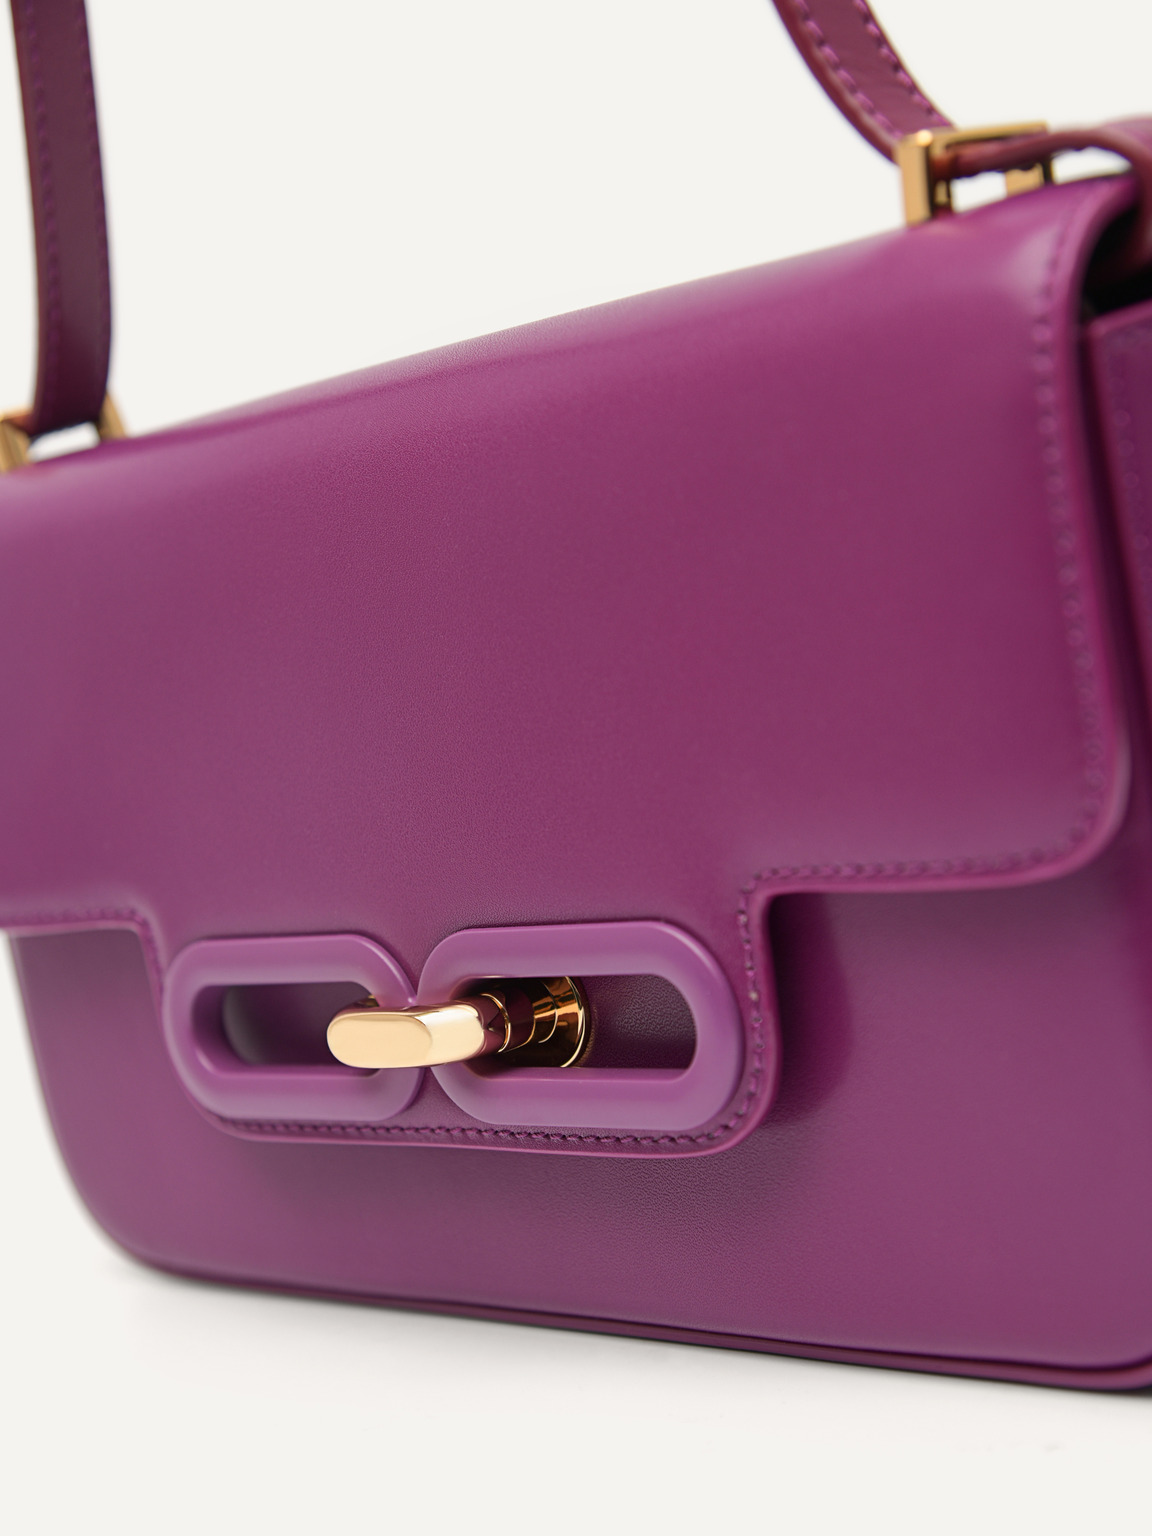 PEDRO工作室Kate皮革信封包, 紫色